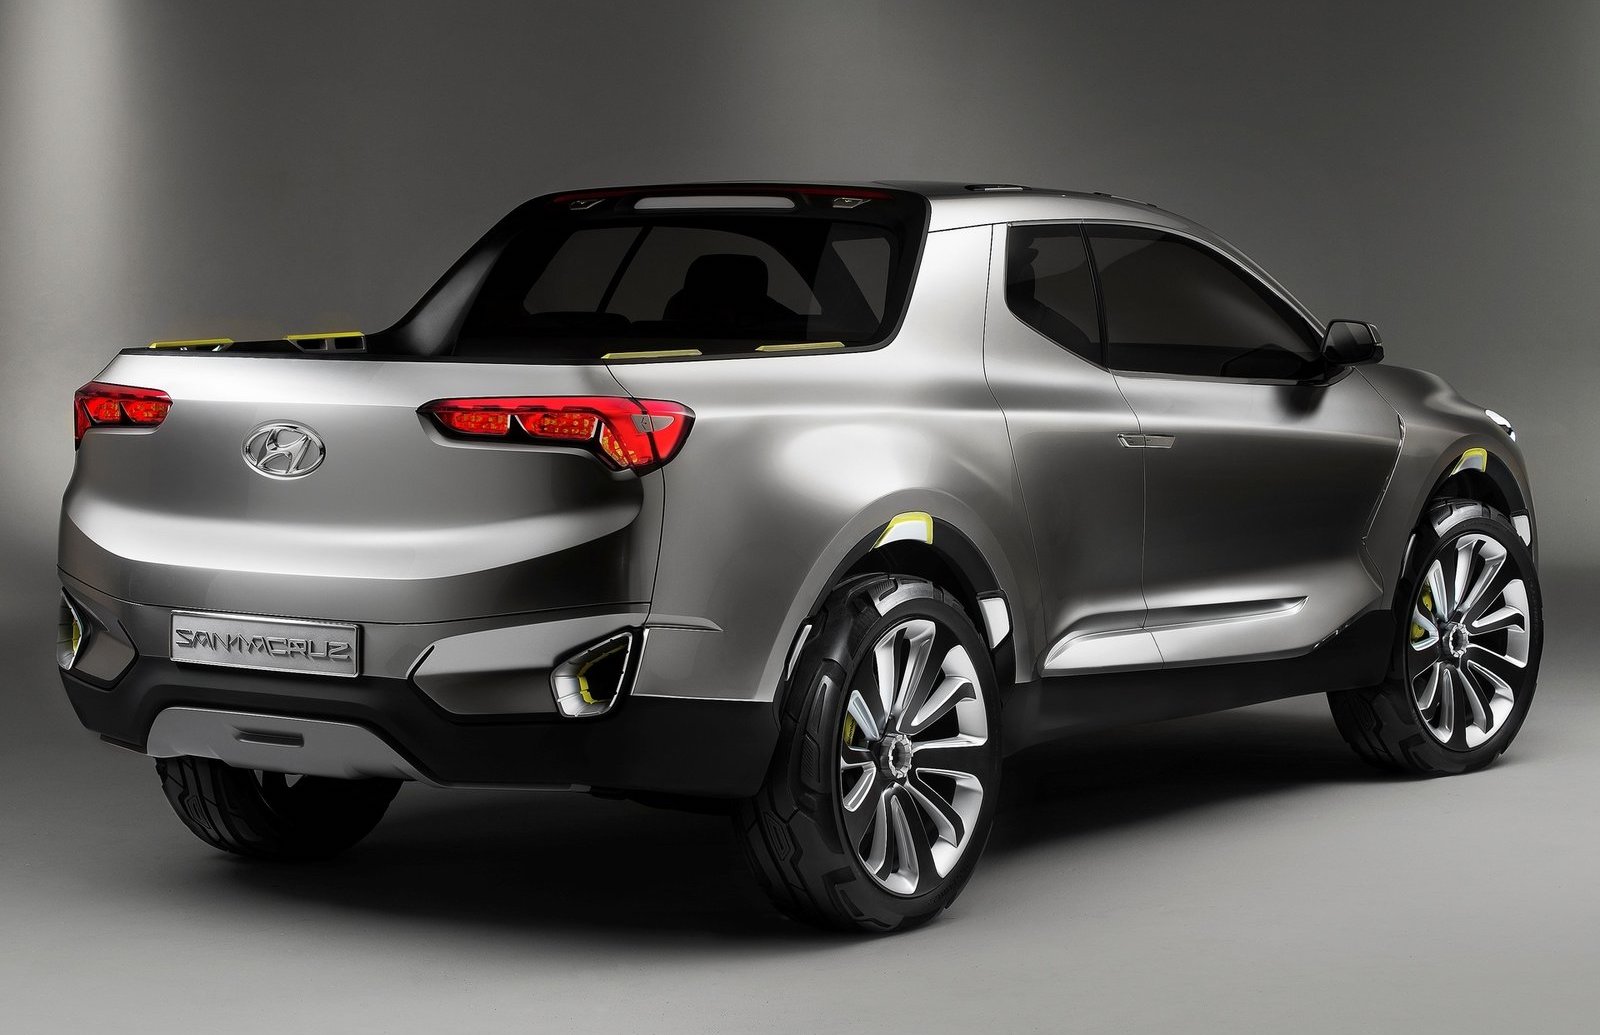 Hyundai pickup confirmed, new Santa Fe in 2019 – report